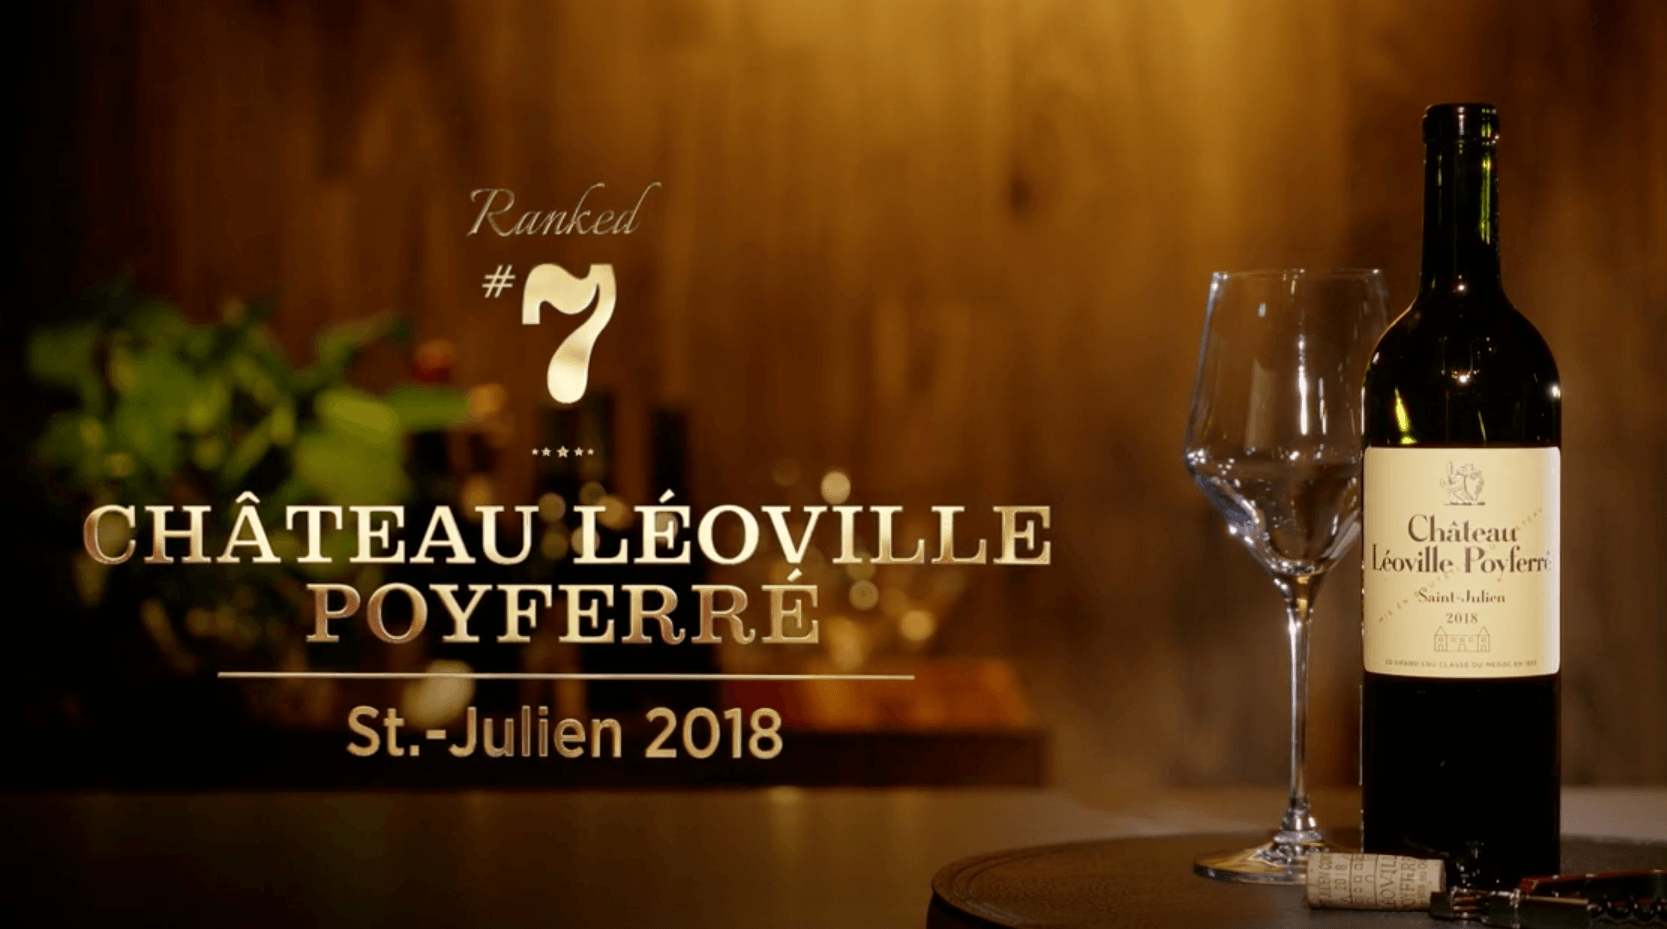 Léoville Poyferré 2018 earned the #7 ranking in Wine Spectator’s Top 100 wines of 2021 - Léoville Poyferré